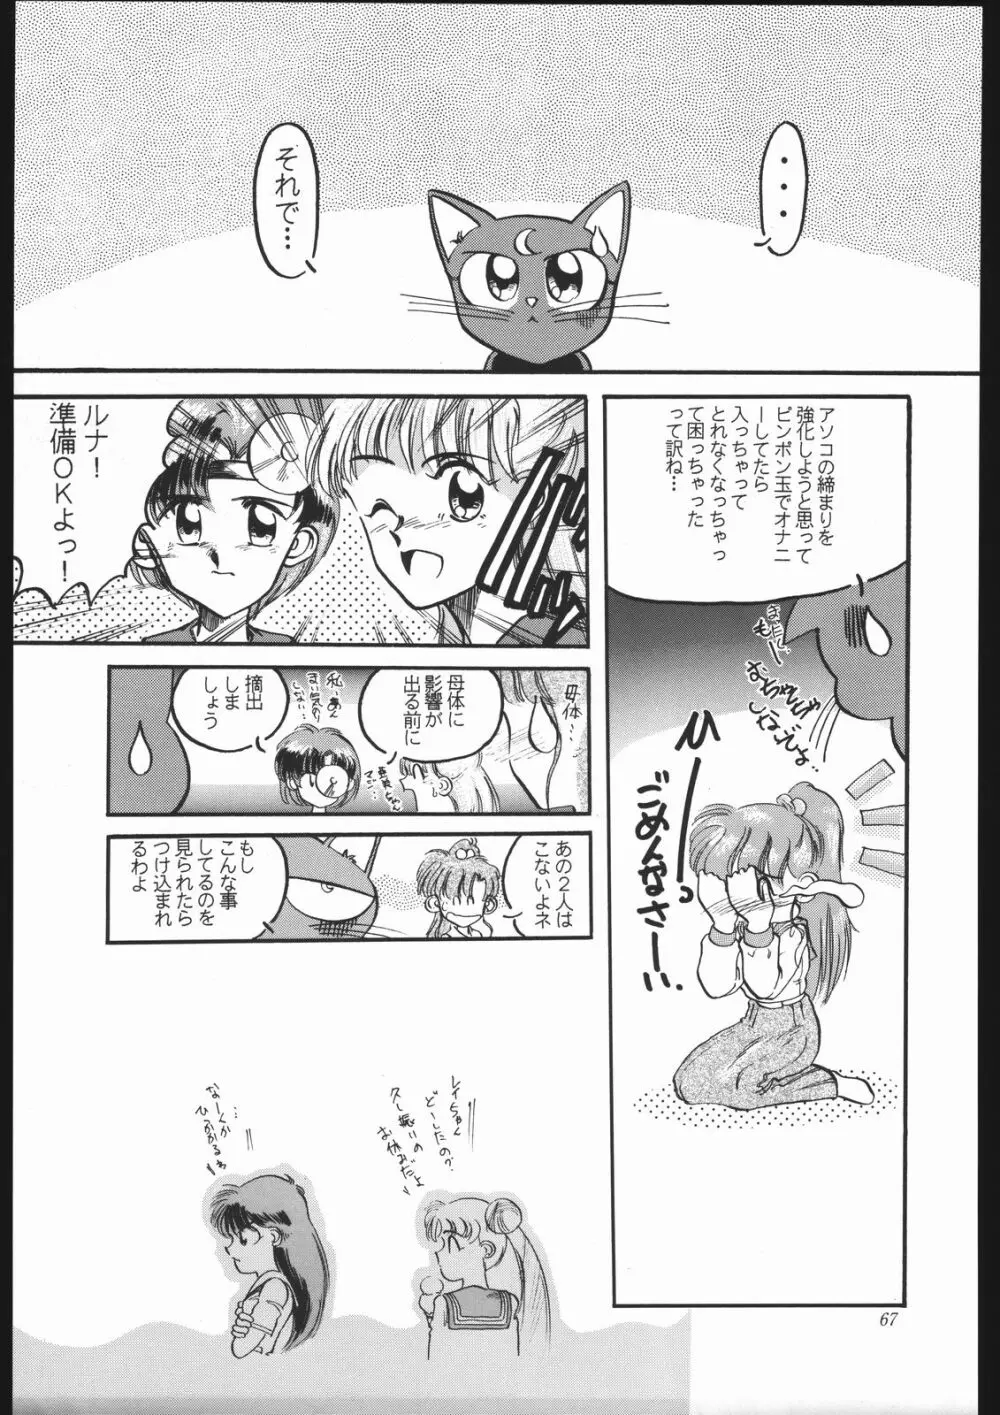 少年ゆういちろう Vol.10 記念号 66ページ